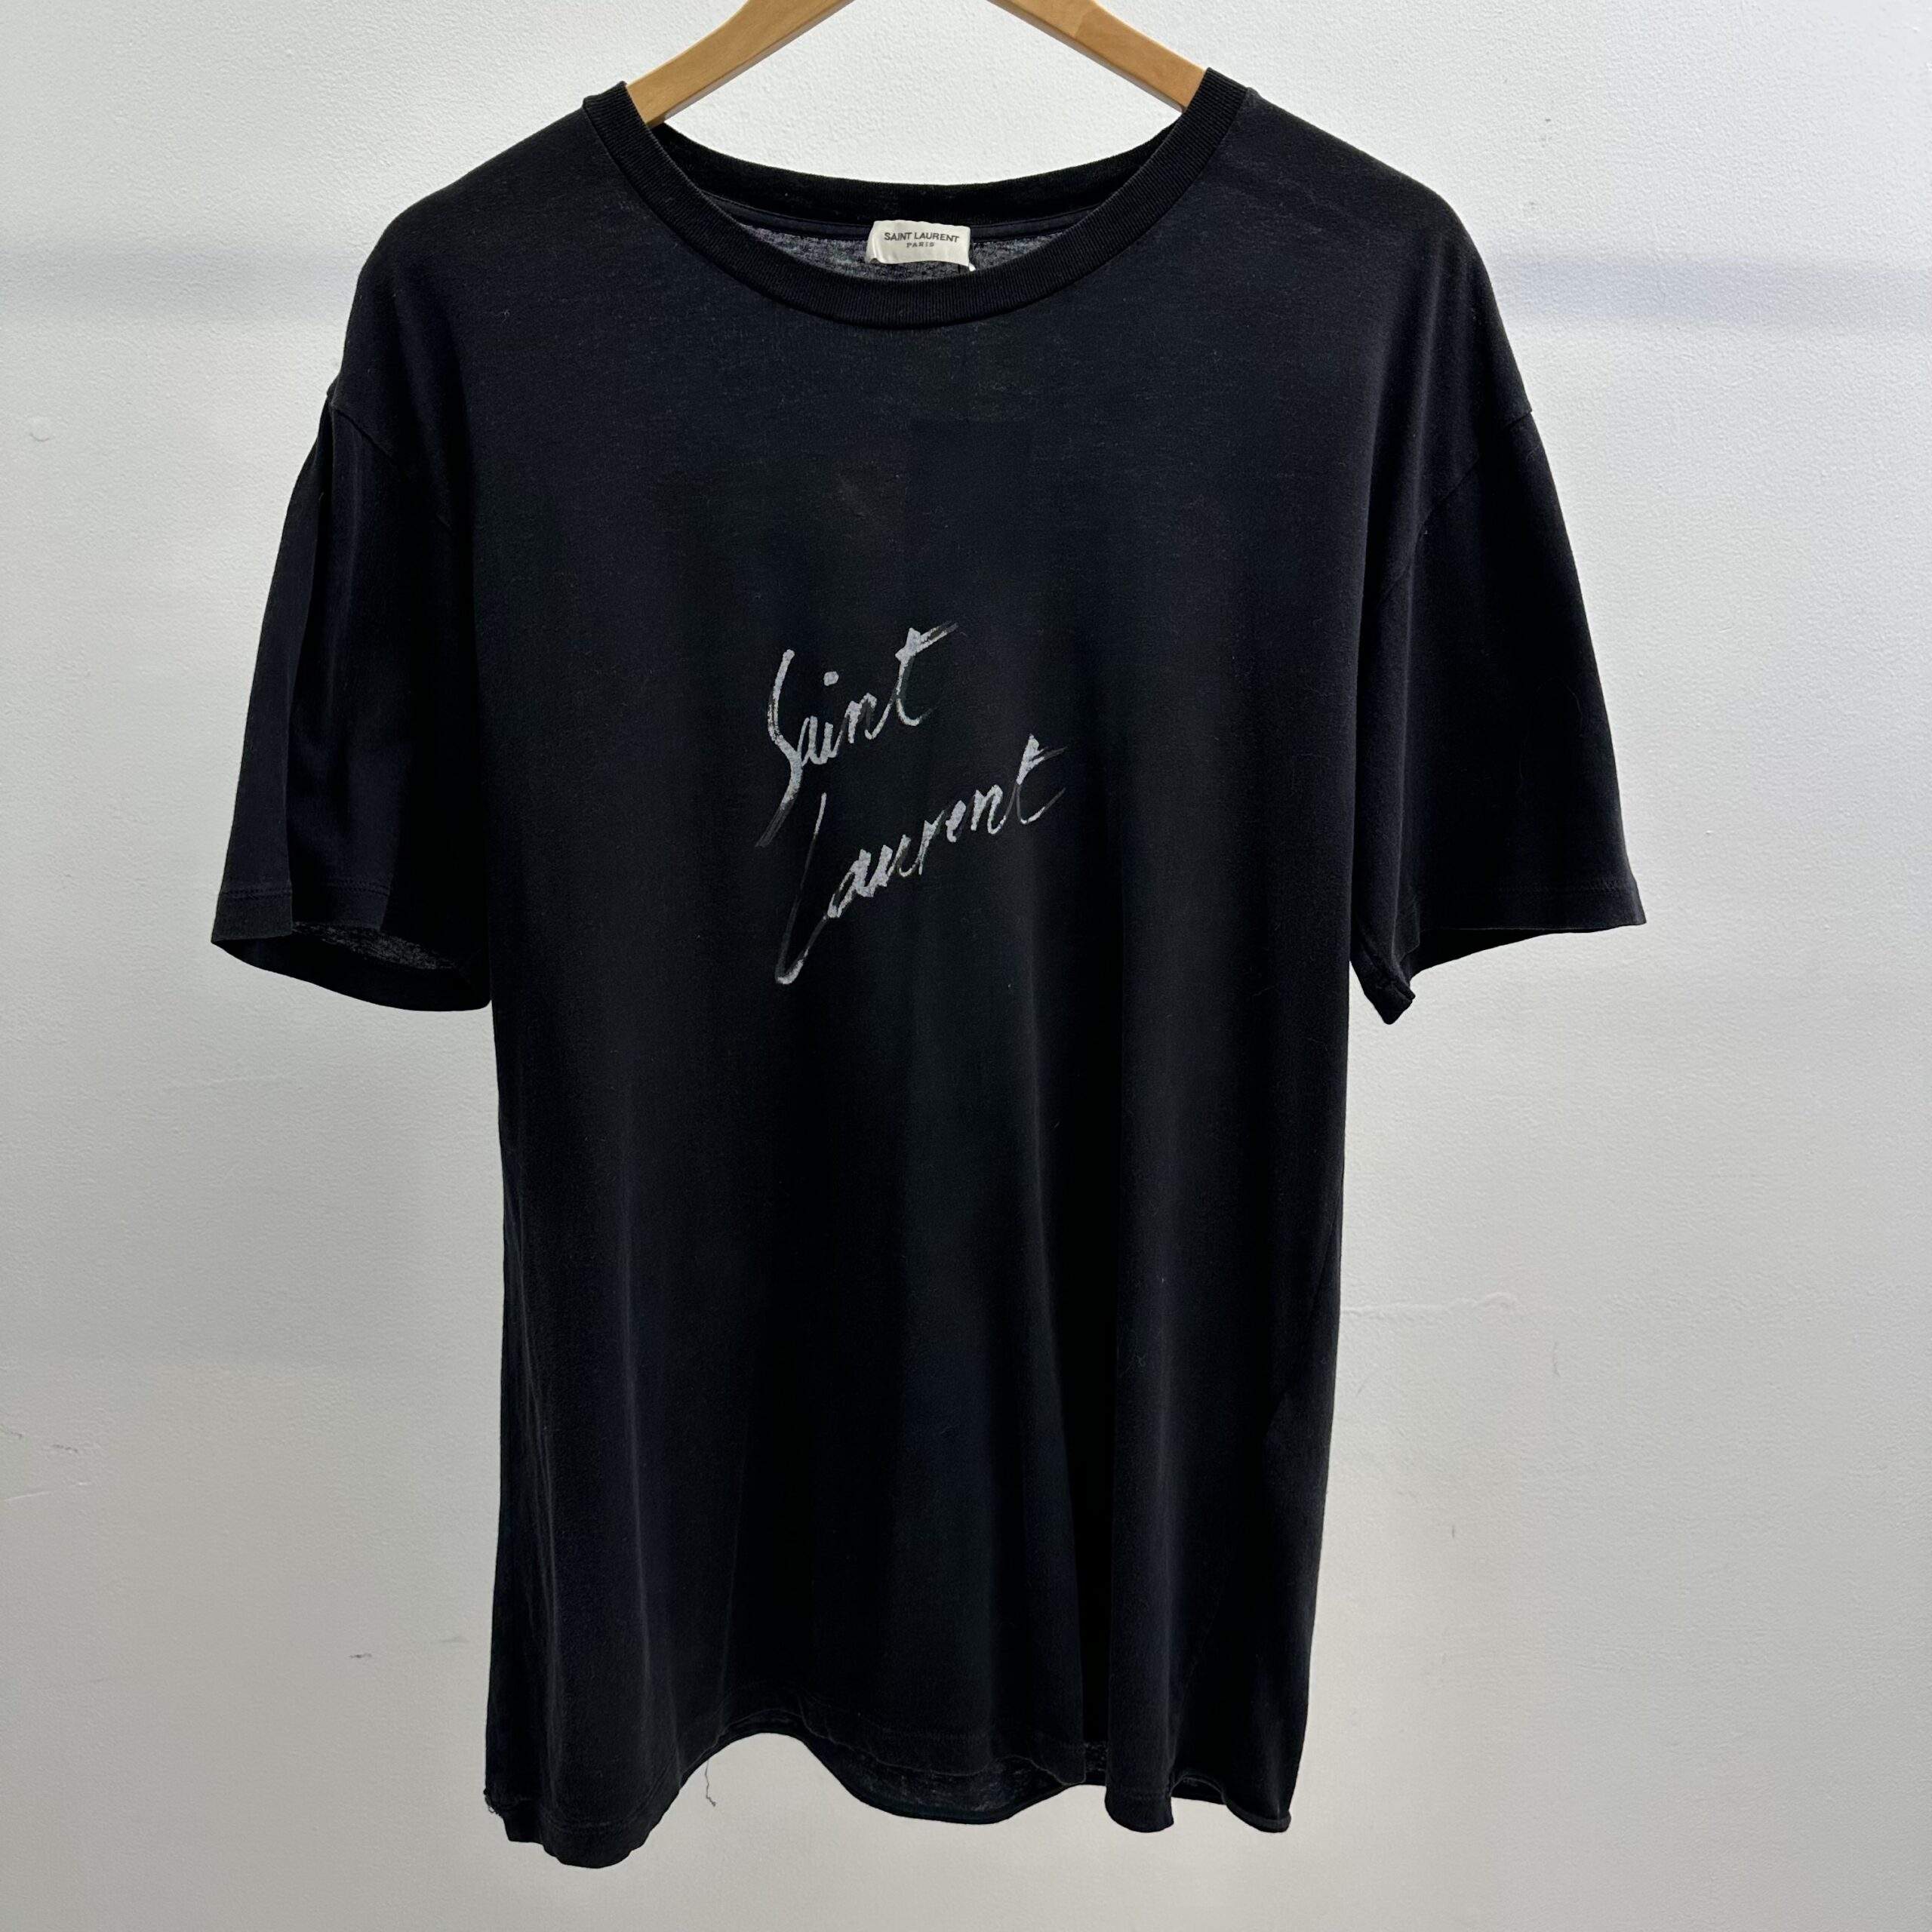 Saint Laurent Cursive Logo T-Shirt - Veblen